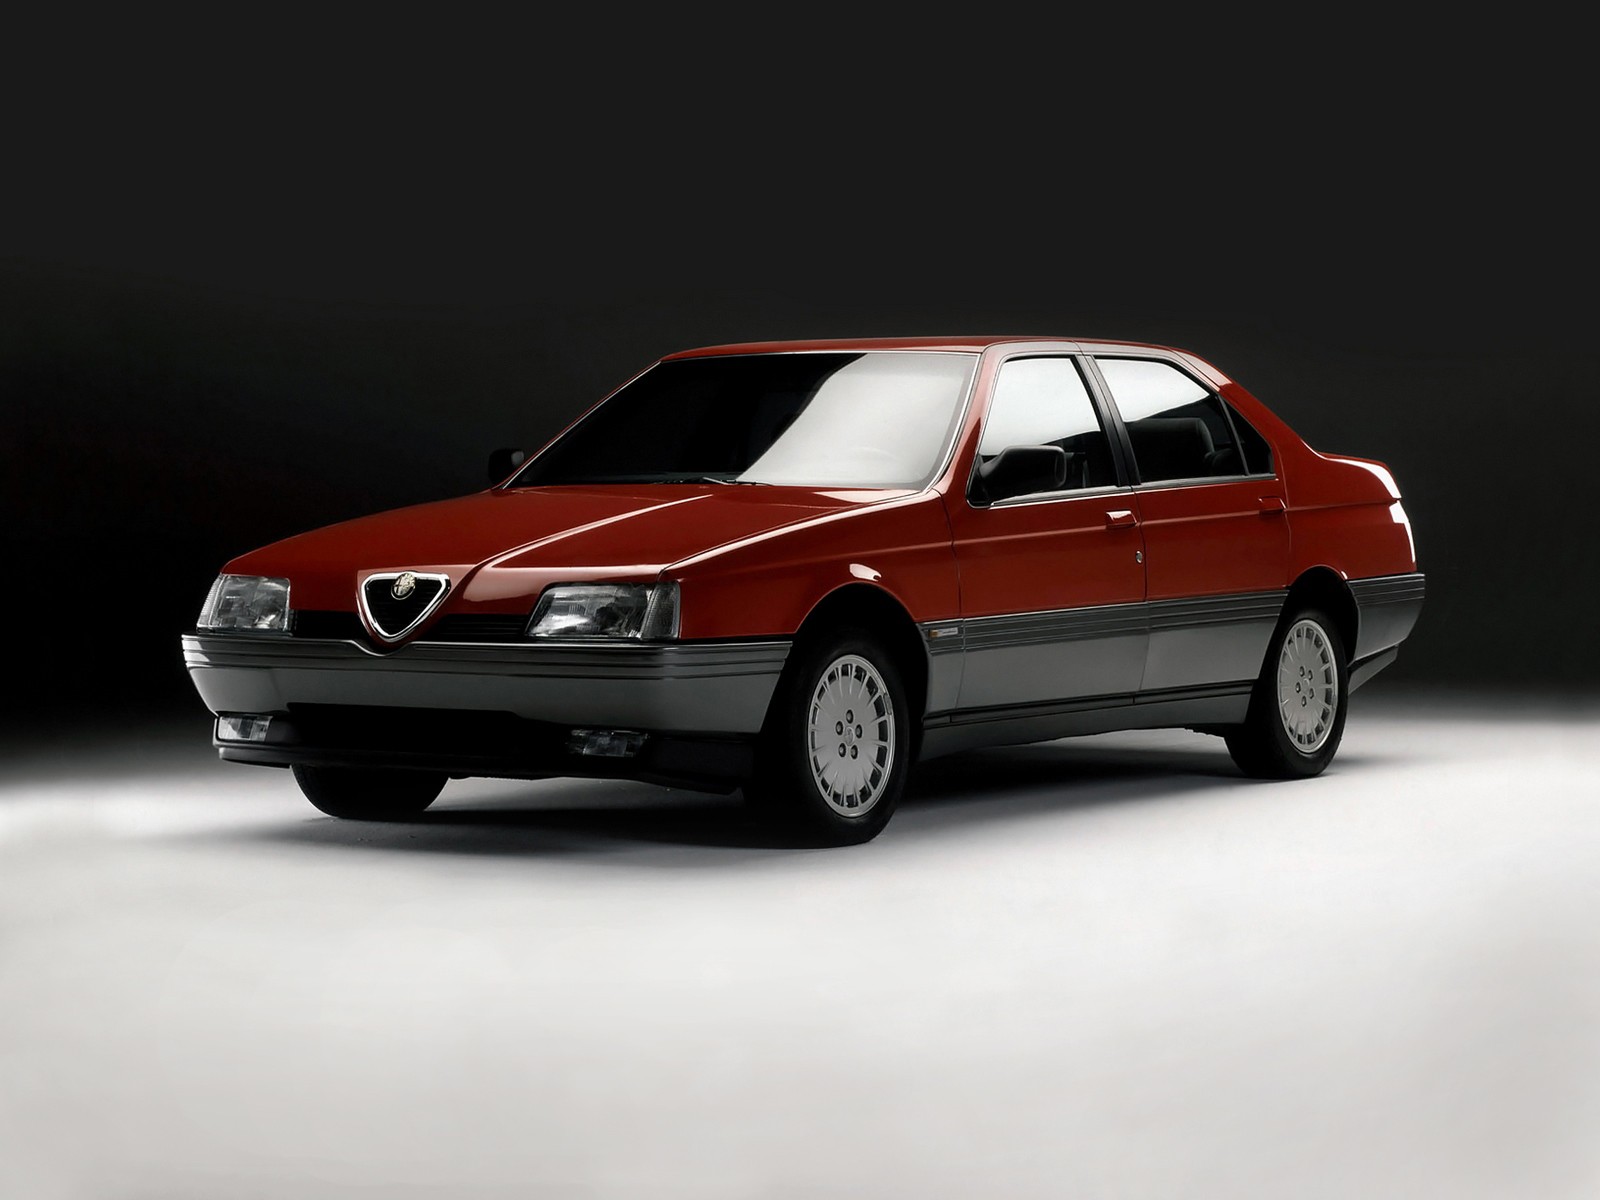 Alfa Romeo 164 - belle à bien des égards